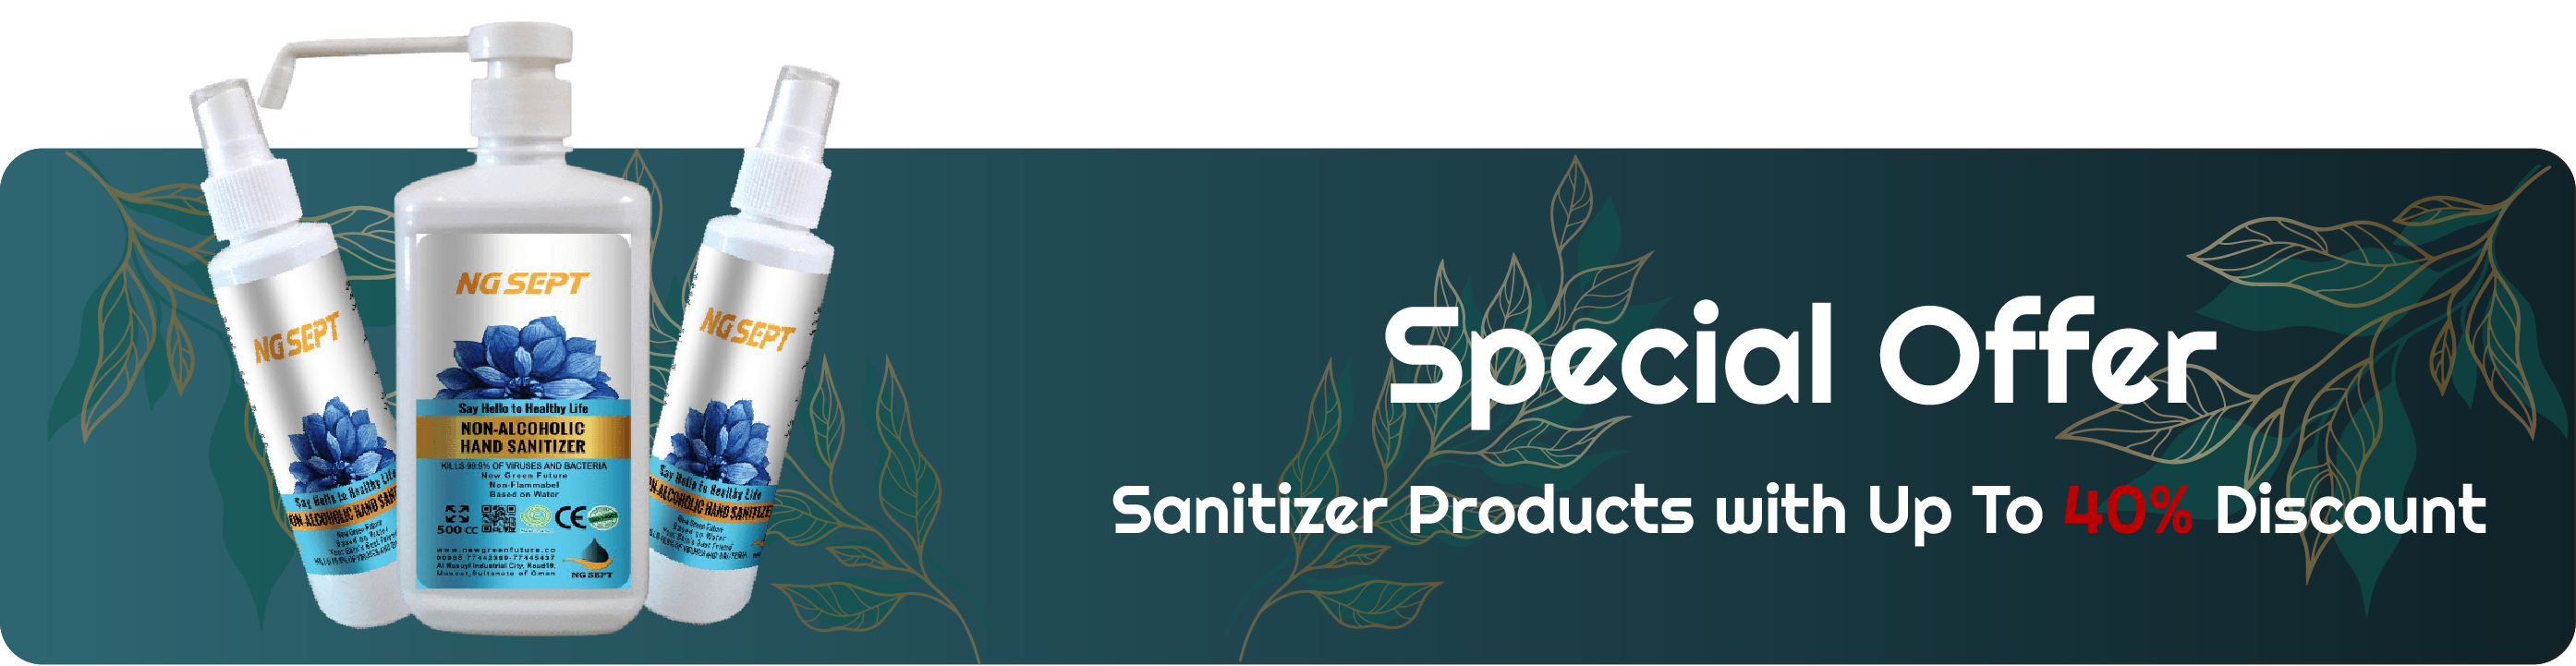 https://shop.newgreenfuture.co/upload/categories/sanitizer-banner-40.png